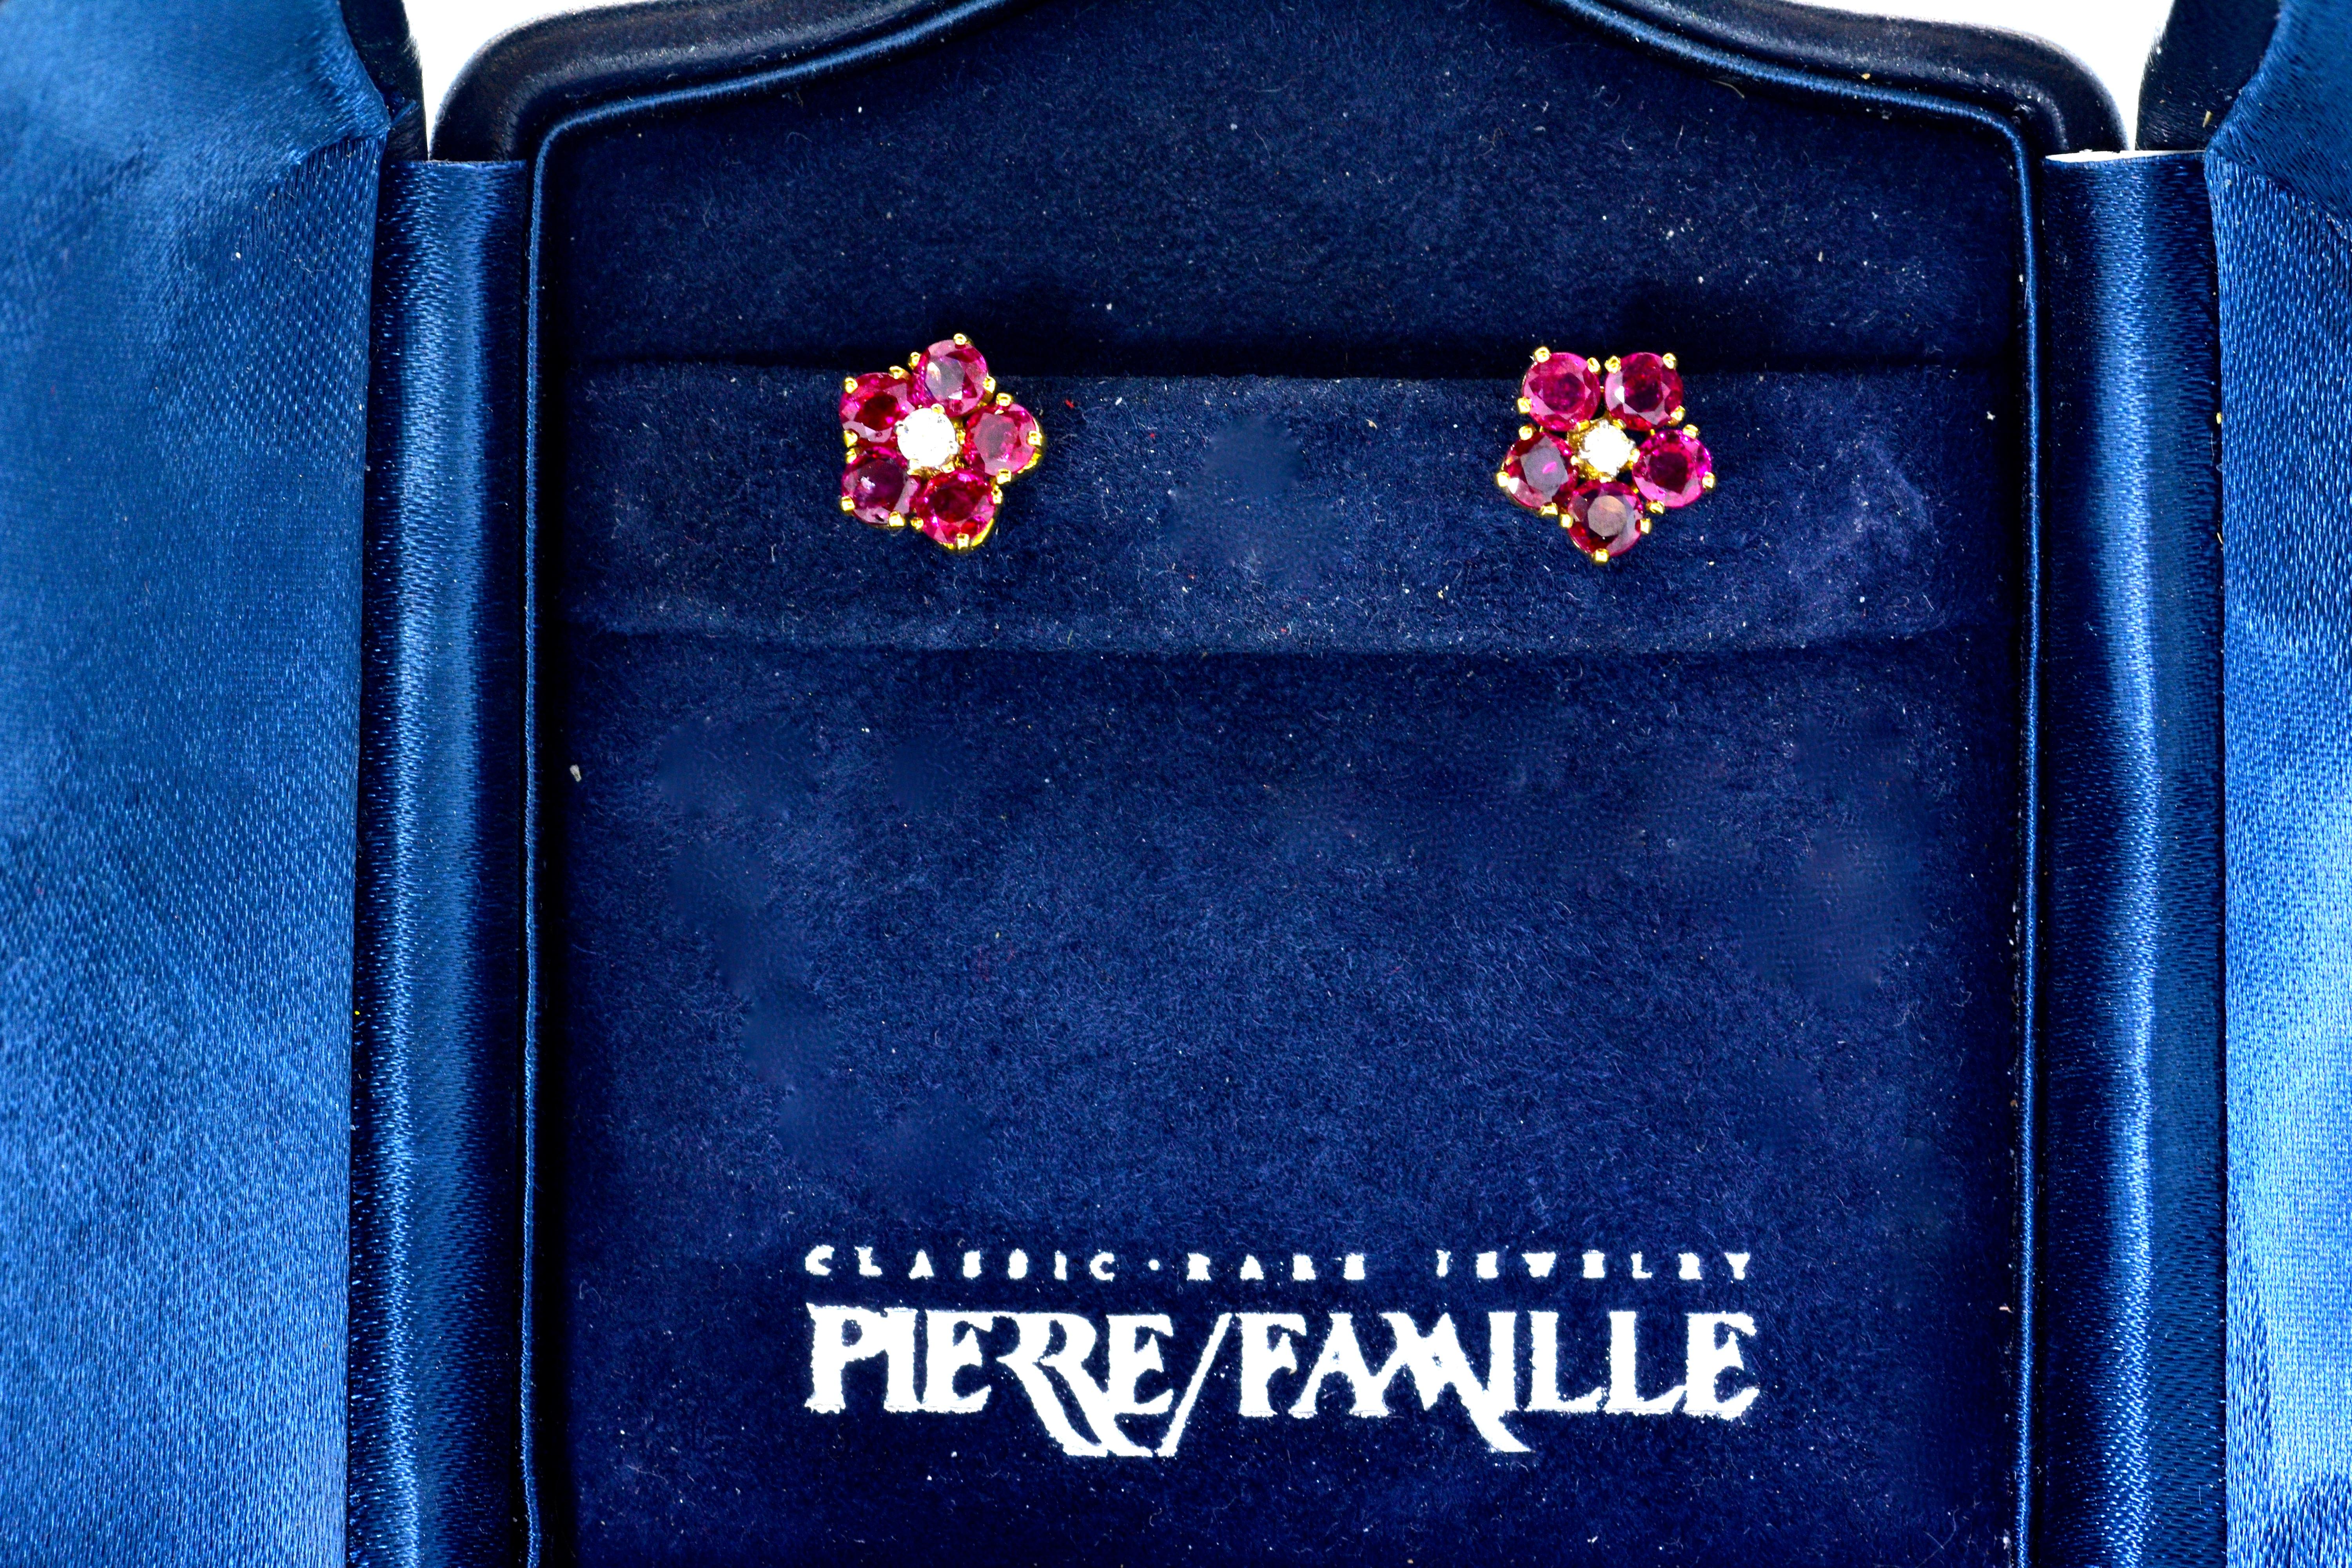 Burma Ruby and Diamond Earrings by Pierre/Famille 1